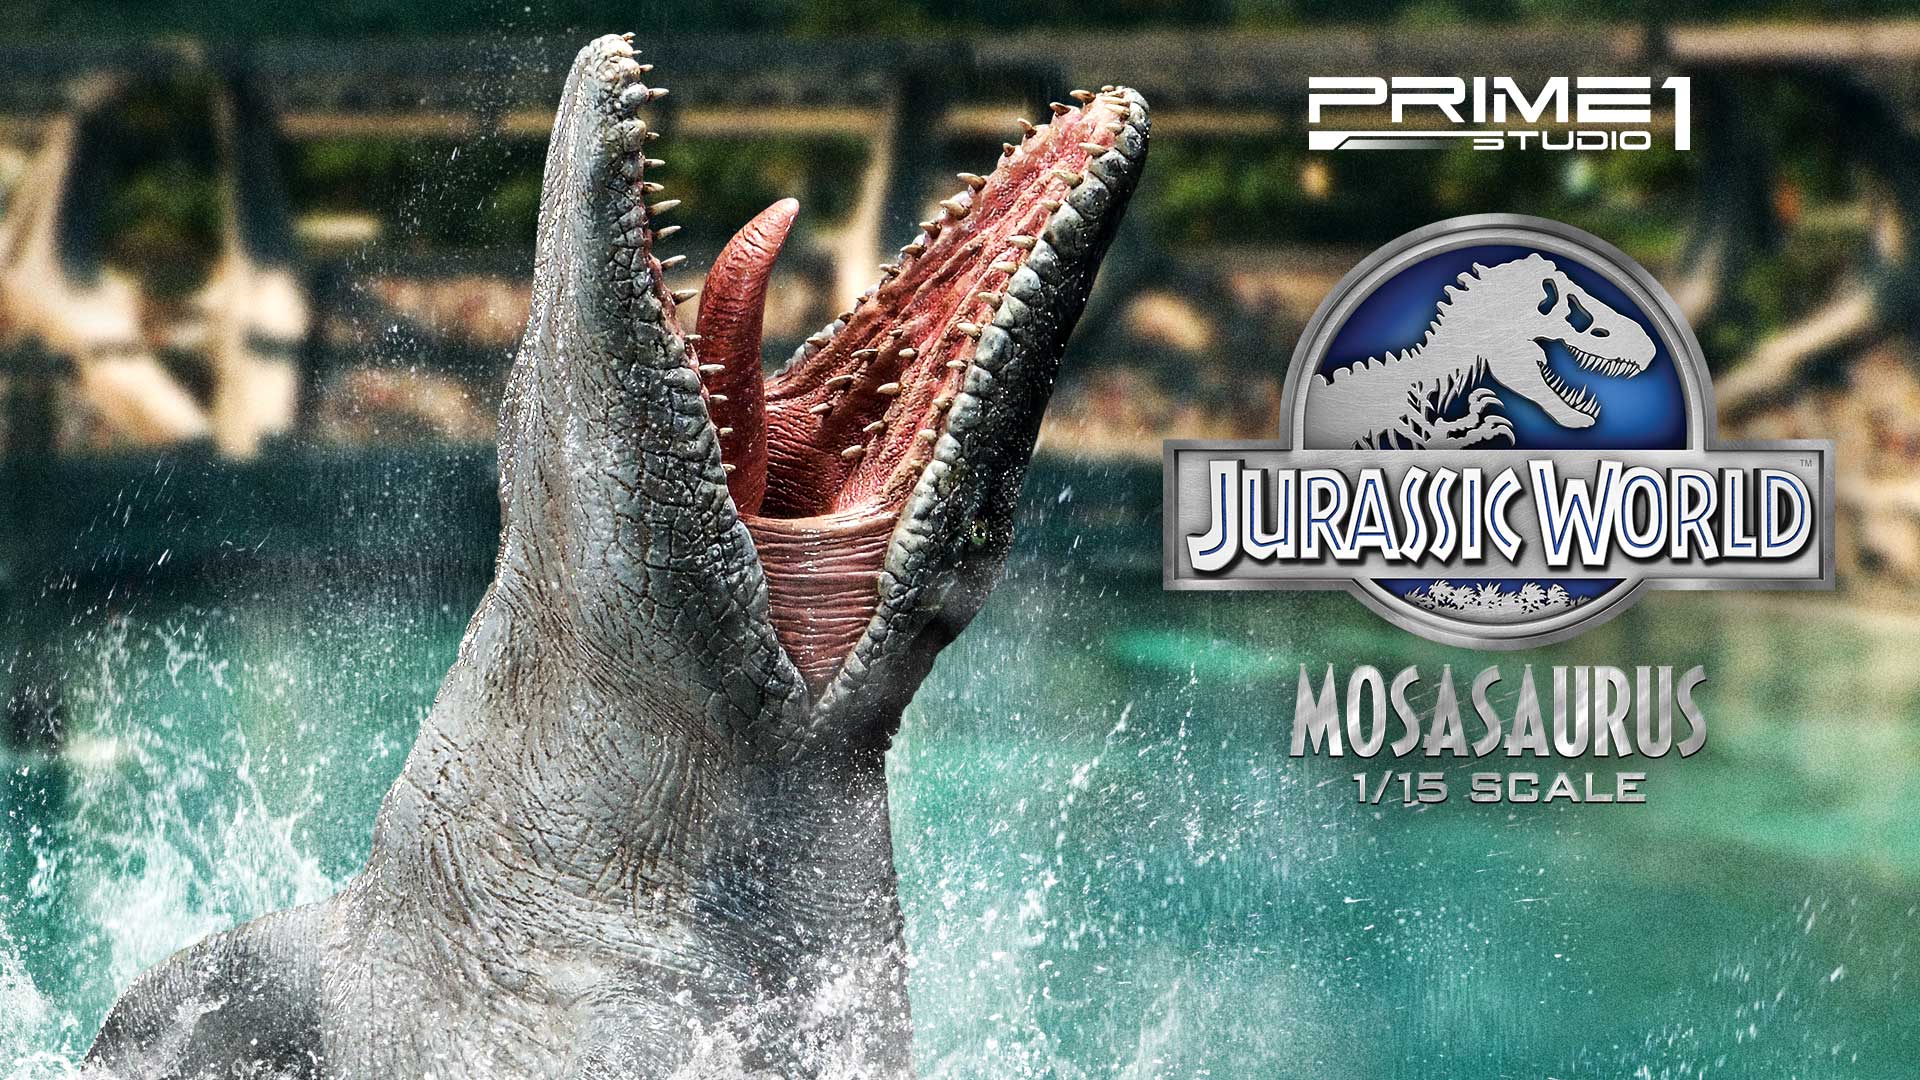 ジュラシック ワールドで絶大な存在感を放った人気恐竜 モササウルス が横幅 90cmオーバー の迫力サイズで登場 Sankeibiz サンケイビズ 自分を磨く経済情報サイト